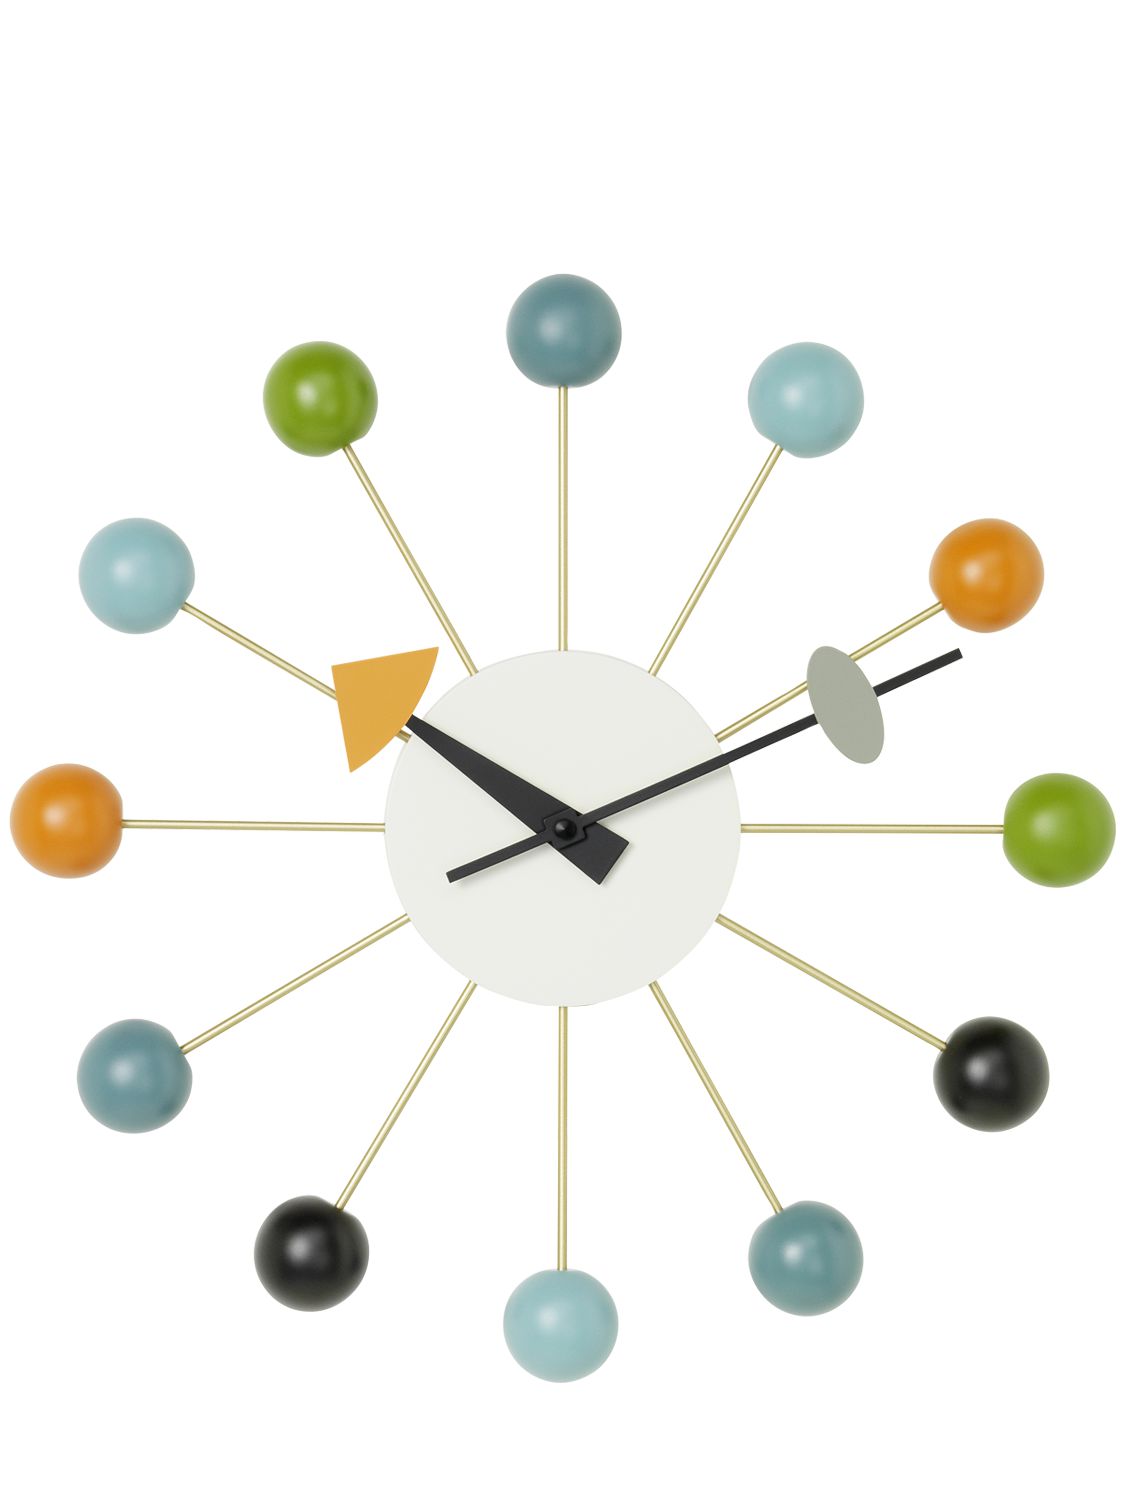 Vitra Ball Clock In Multicolor